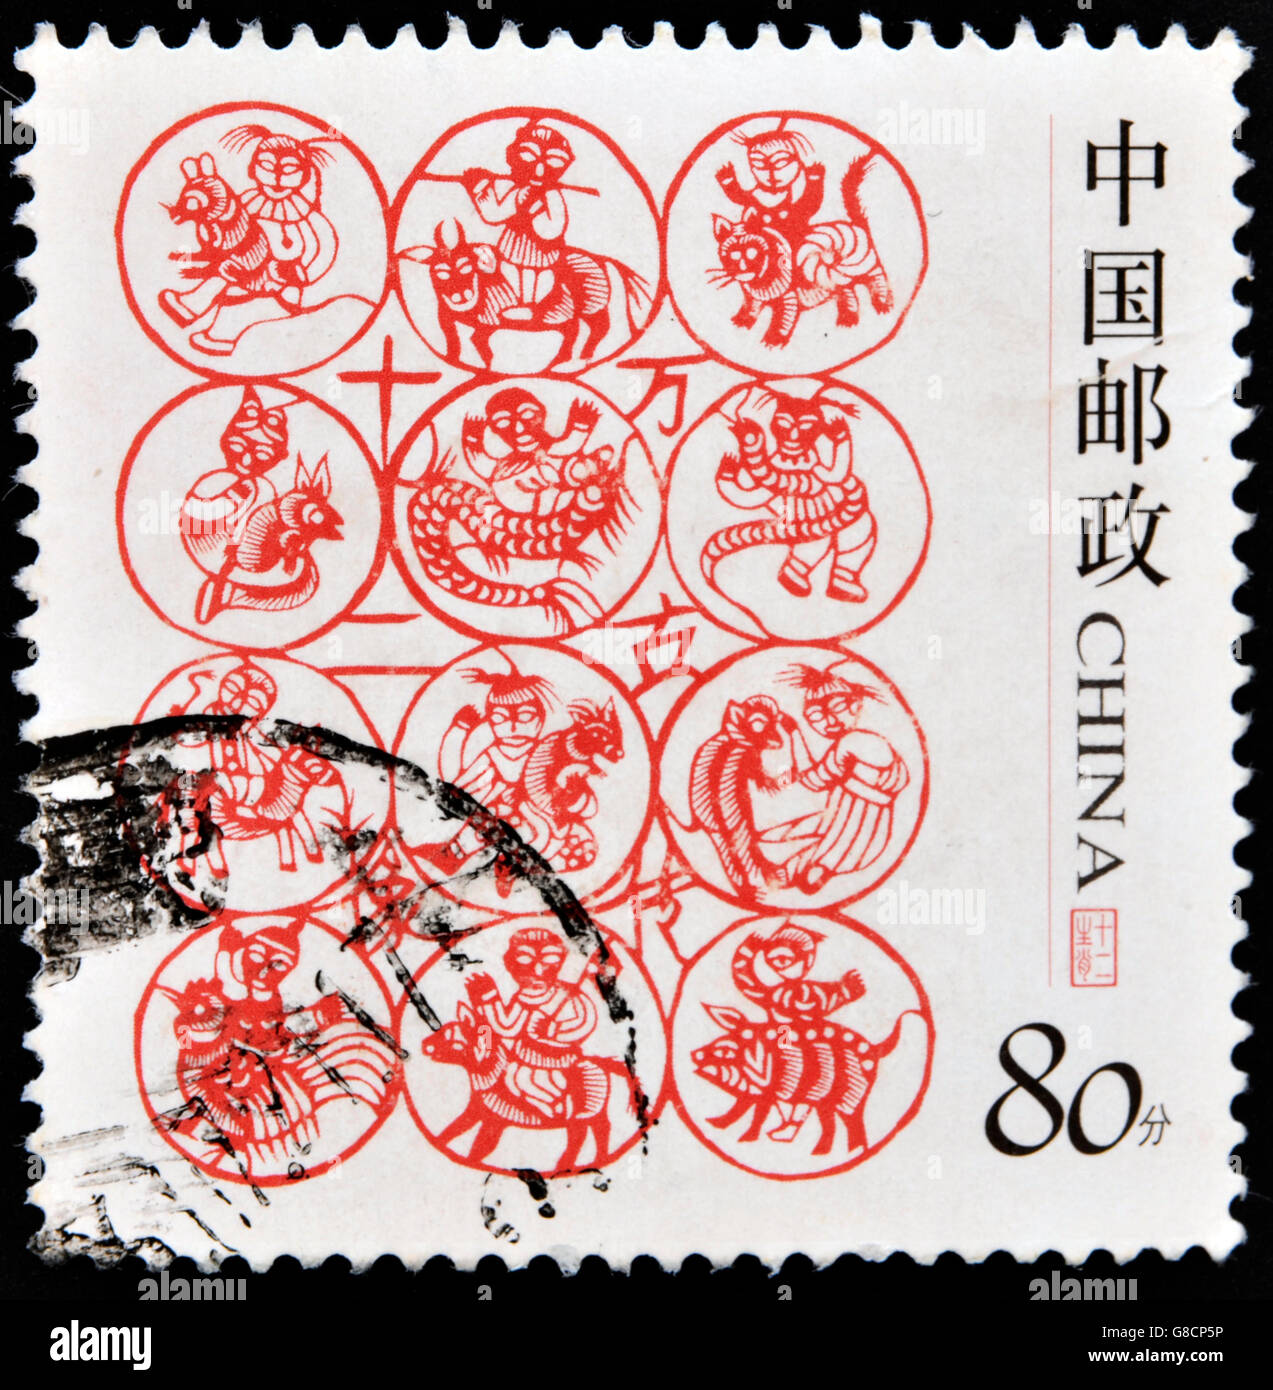 Chine - vers 2005 : un timbre imprimé en Chine montre les signes du zodiaque chinois, vers 2005 Banque D'Images